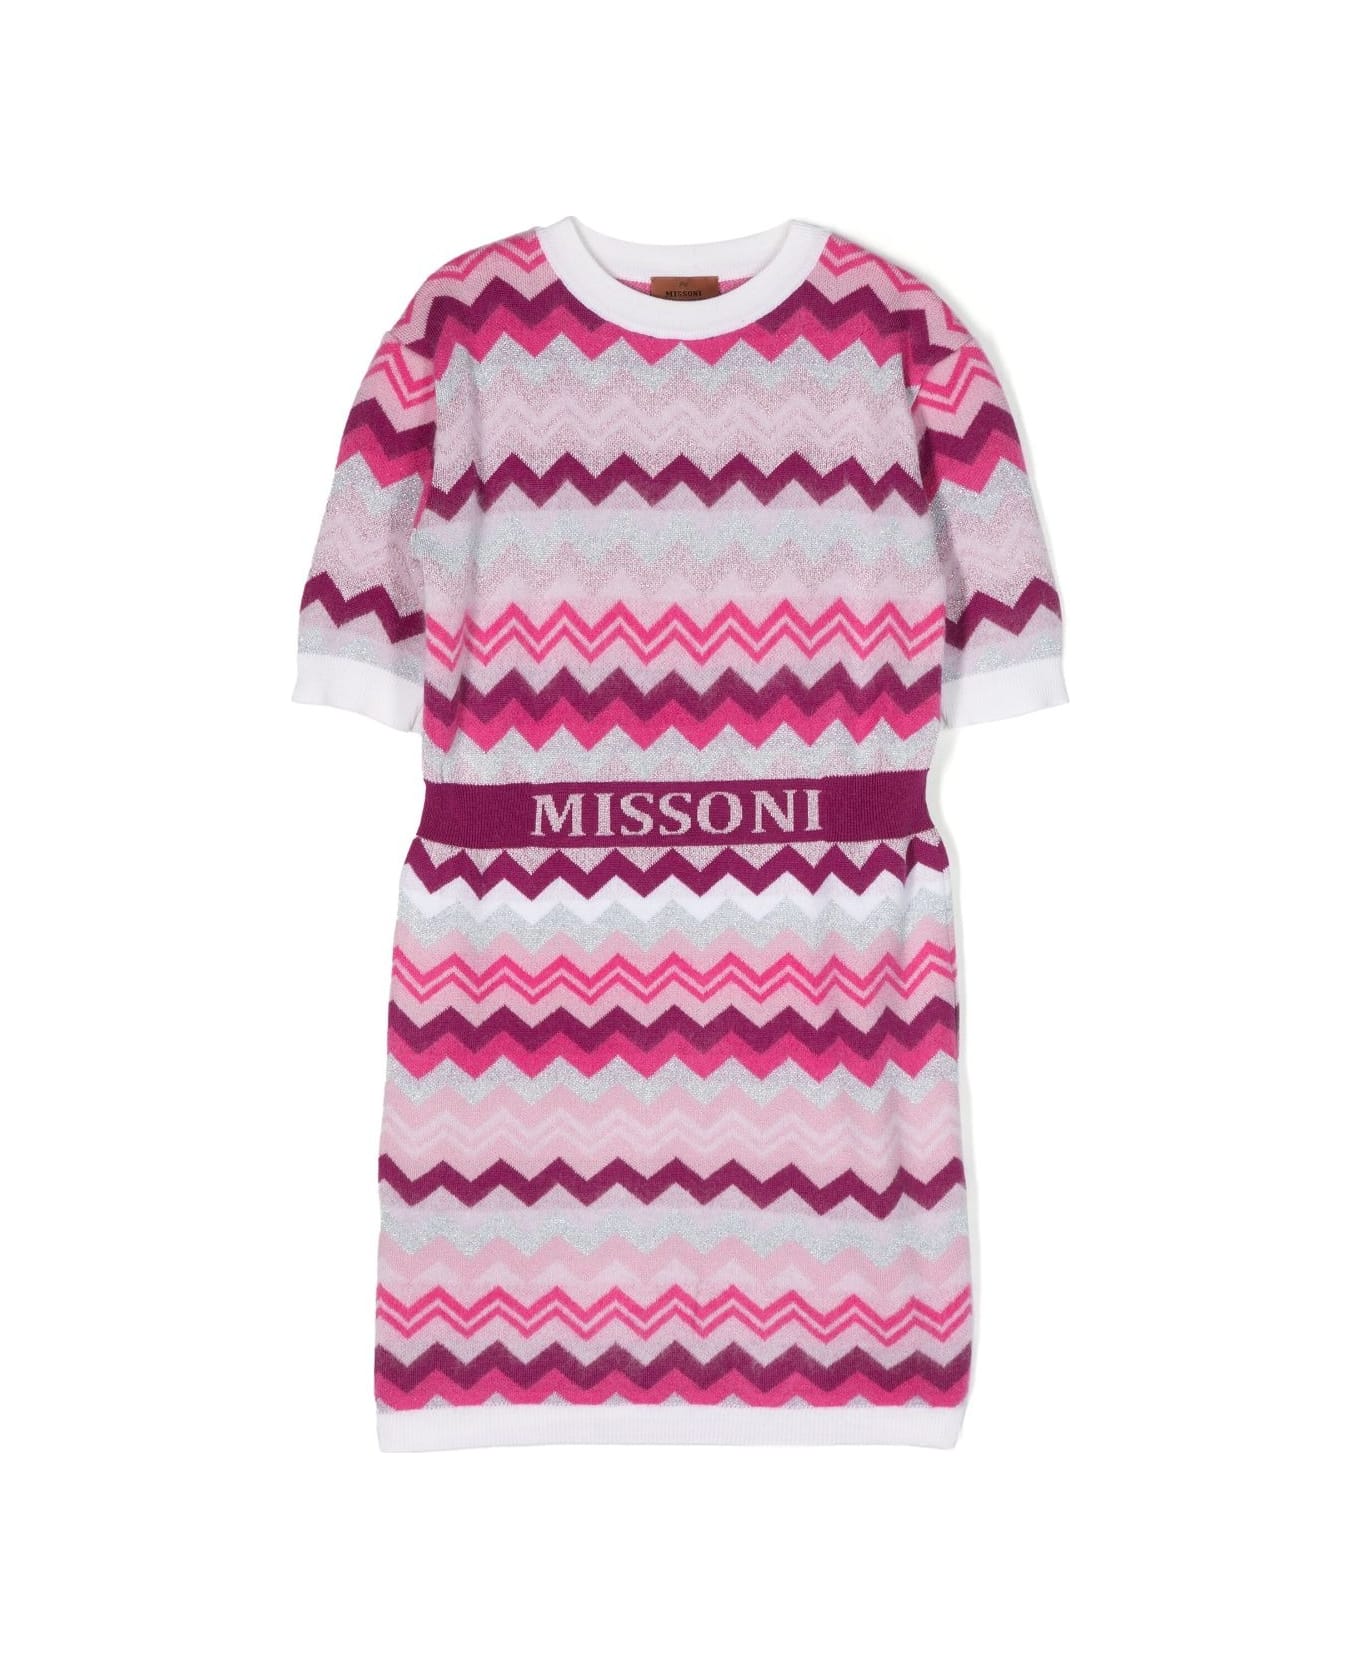 Missoni Kids Pink And Fuchsia Chevron Patterned Dress - C